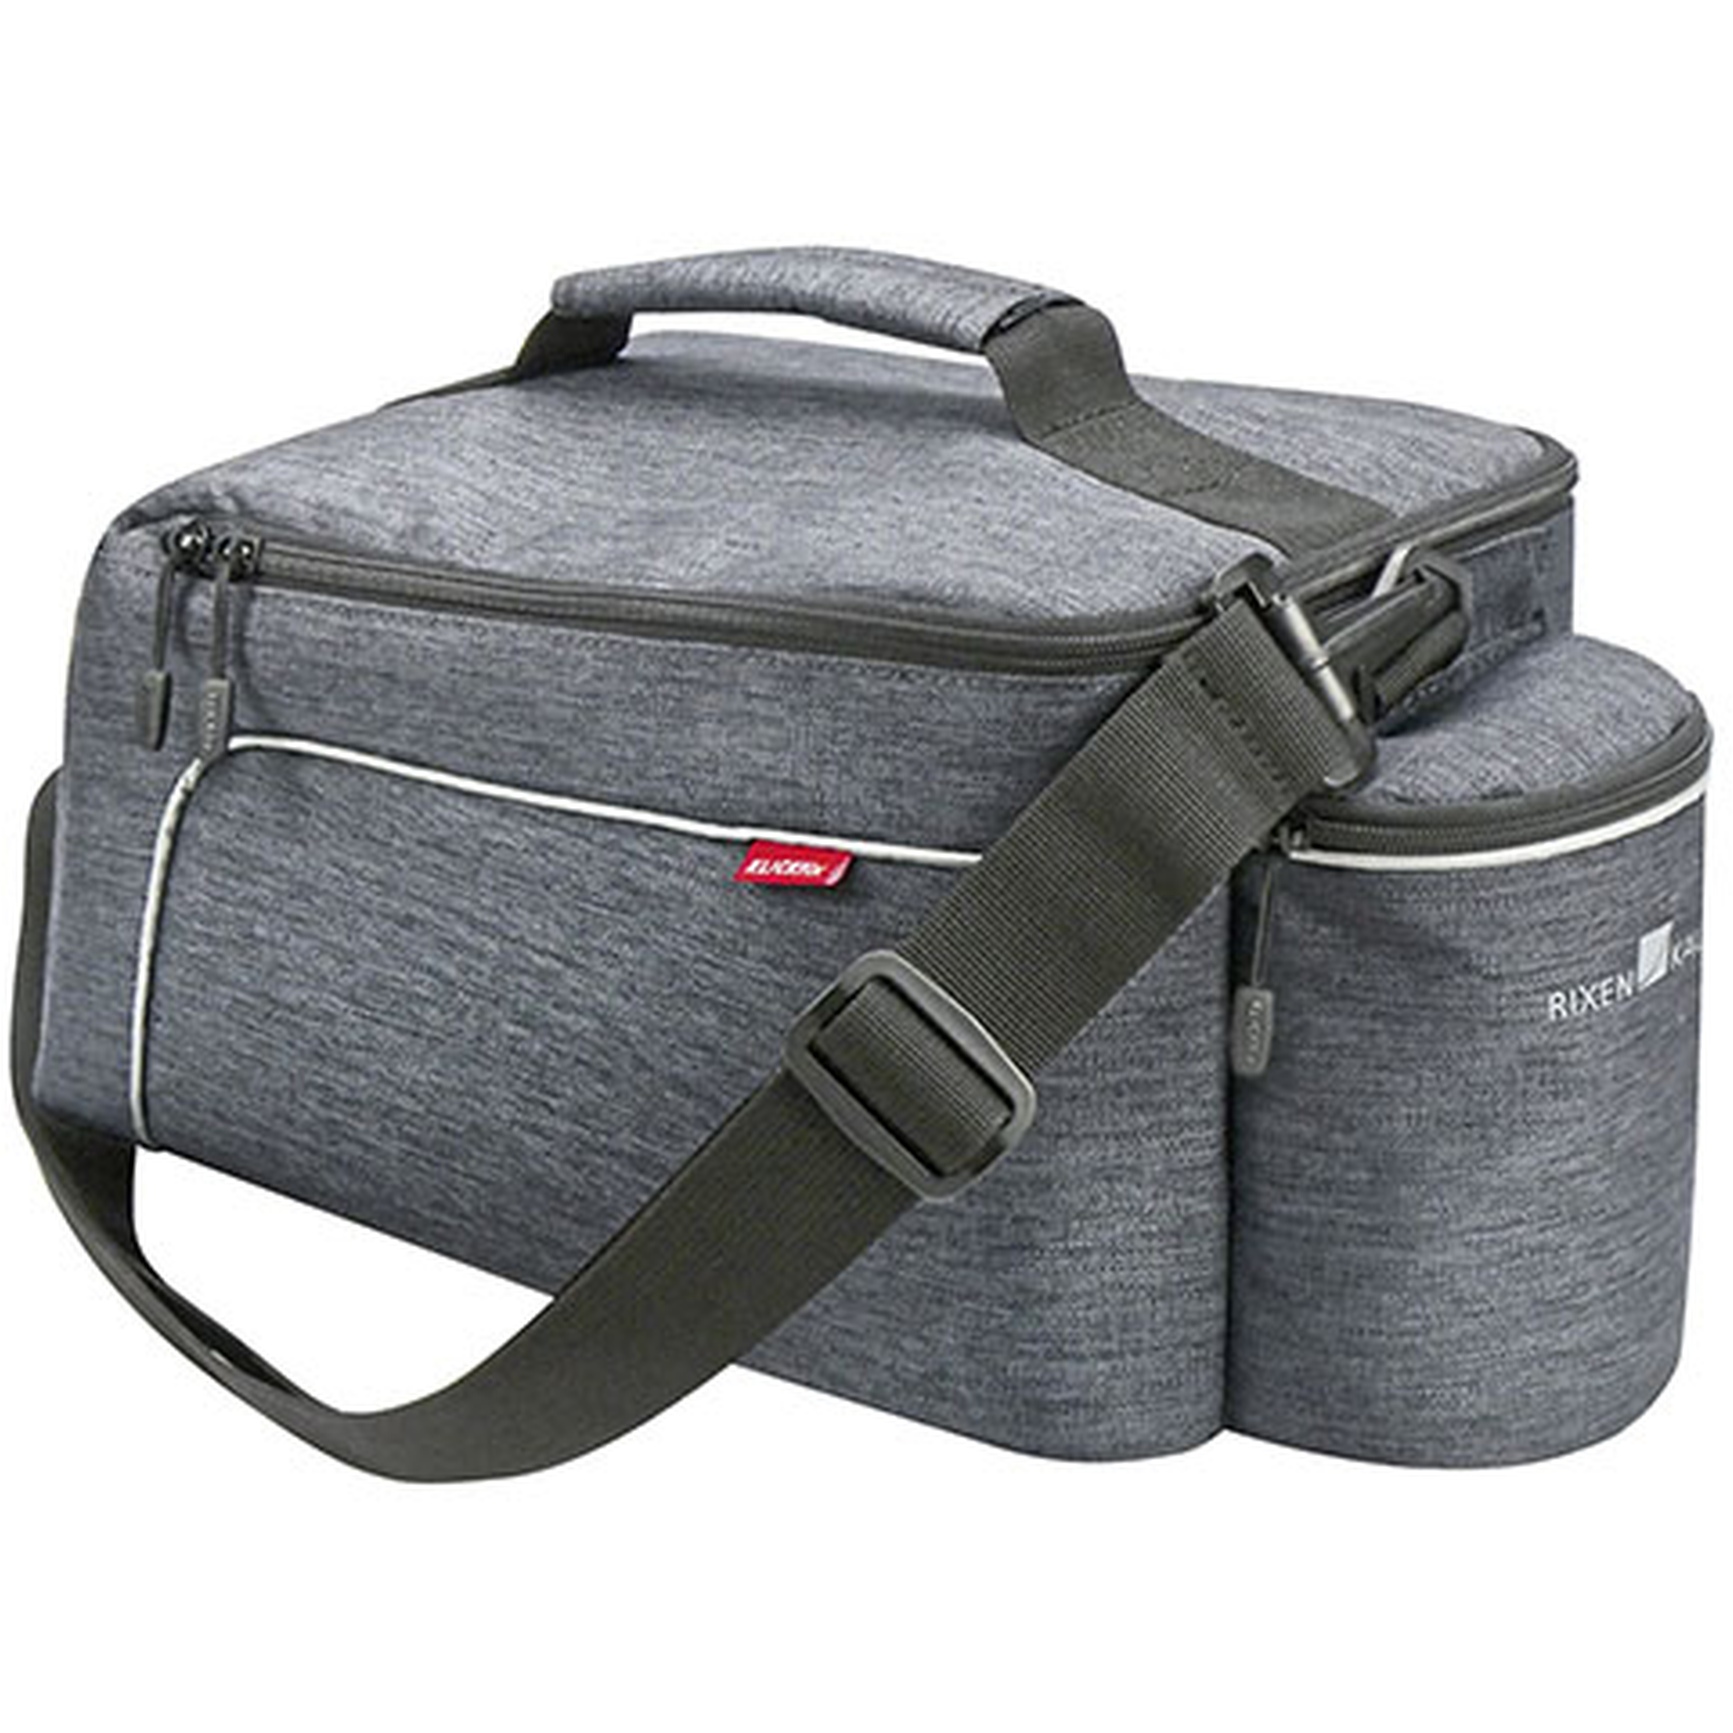 Bild von KLICKfix Rackpack Light Gepäckträgertasche für Racktime - grau